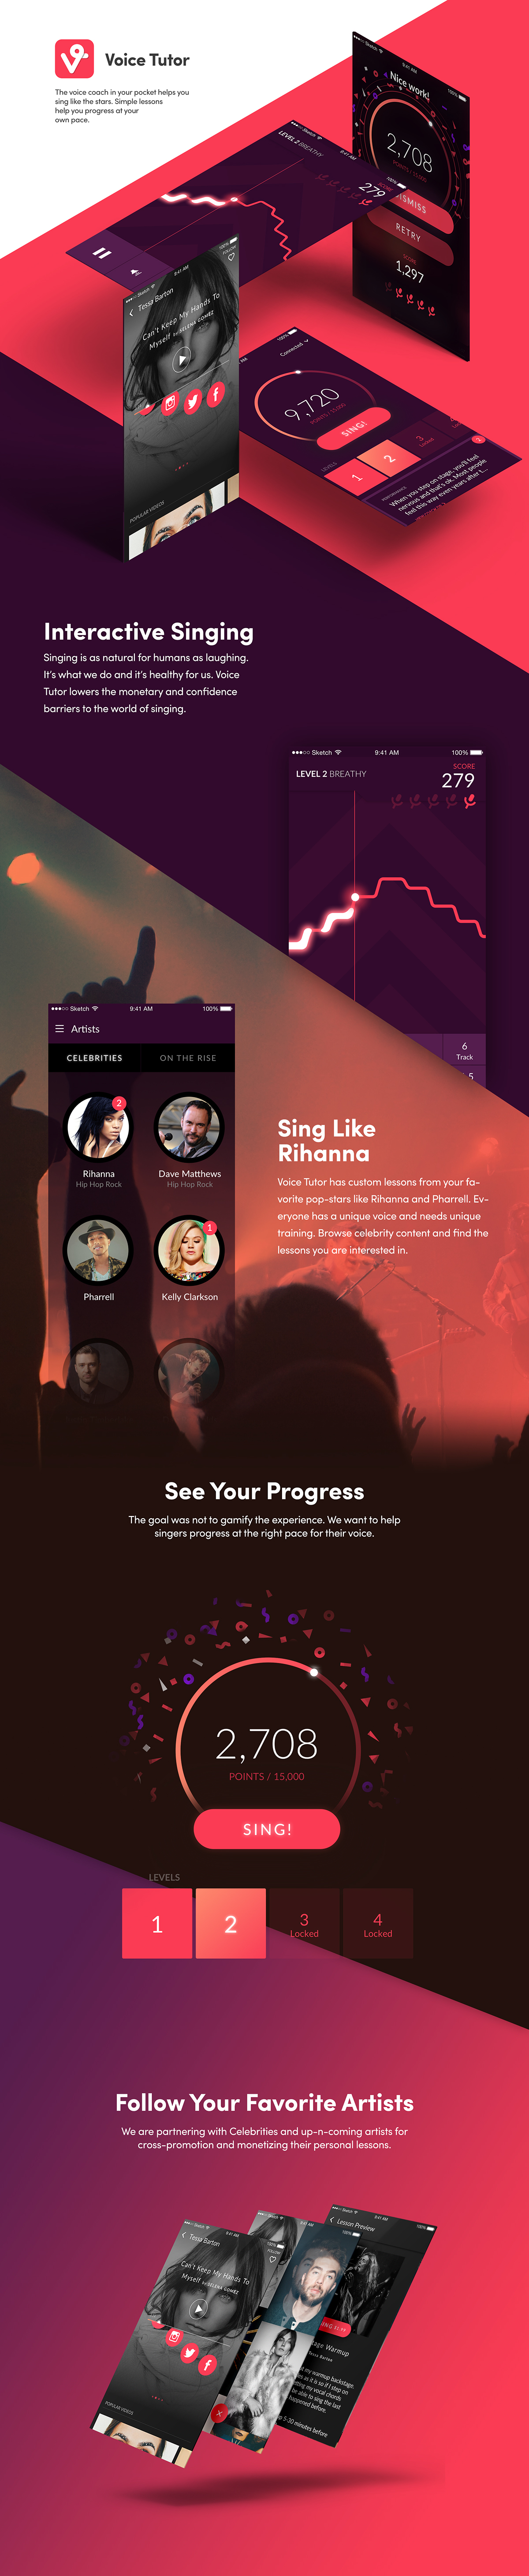 Adobe Portfolio app ios Singing Sing Audio Singer community record voice iphone orange pink purple gradient